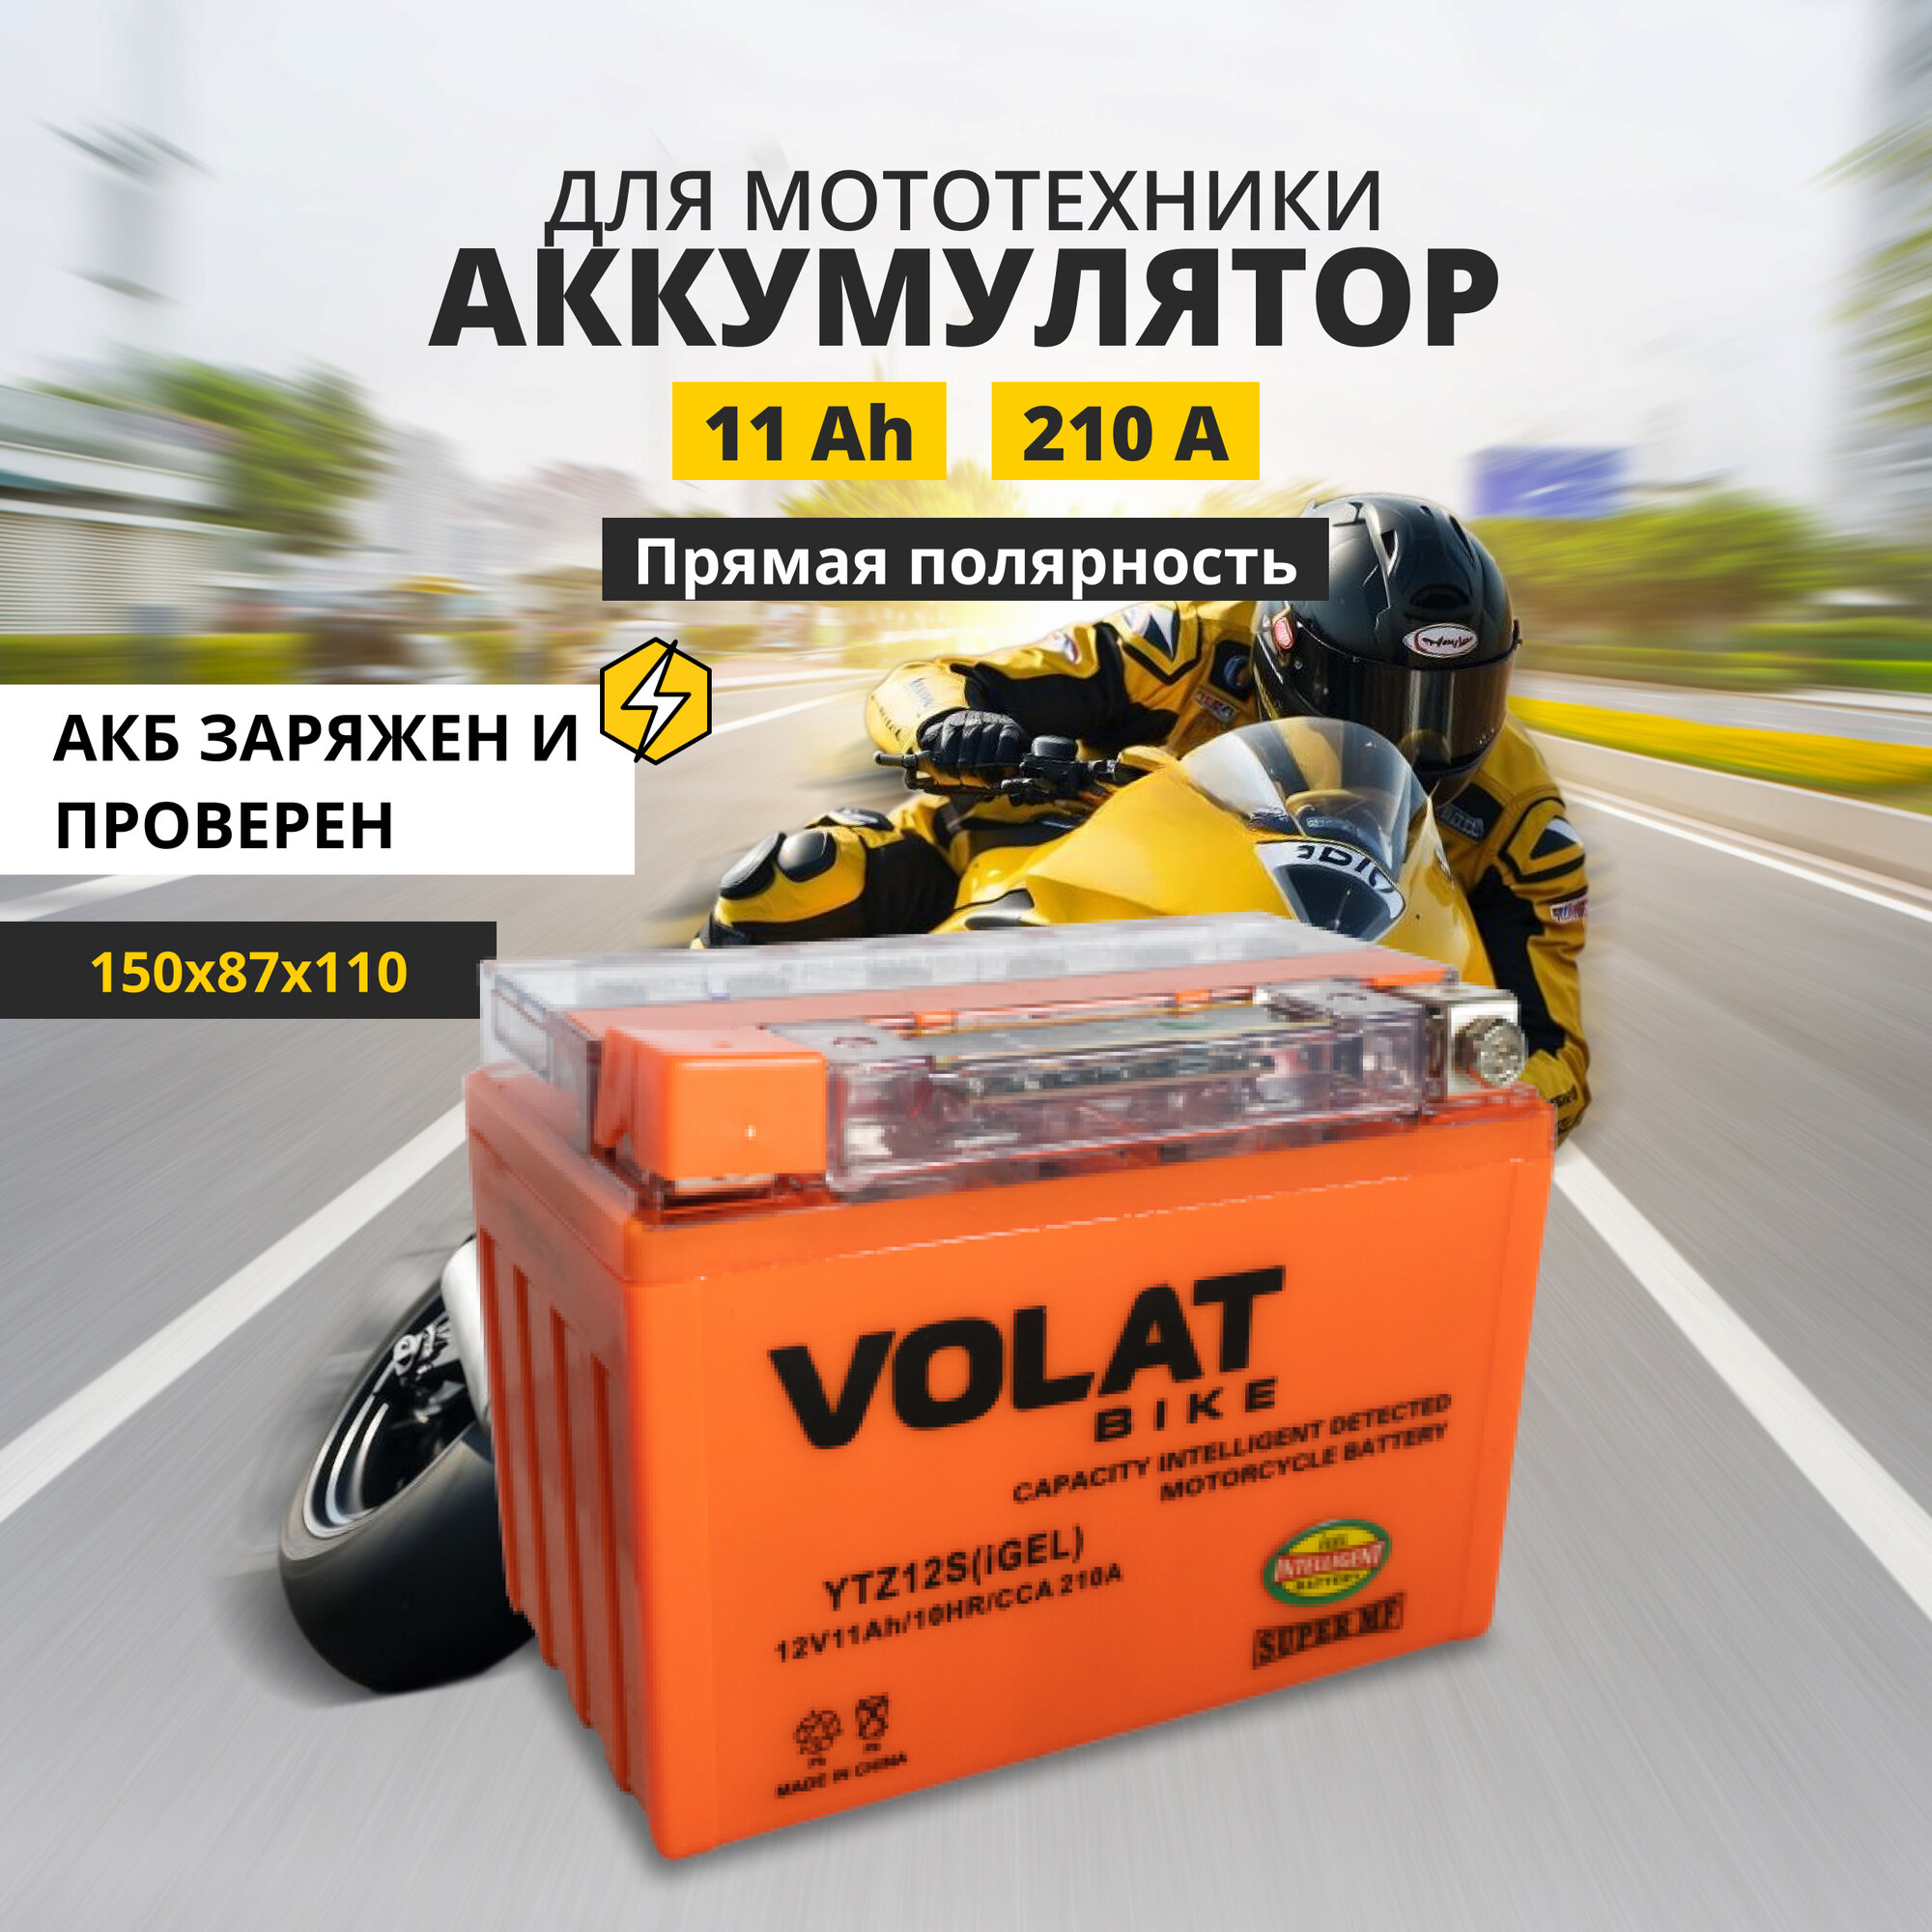 Аккумулятор для мотоцикла 12в гелевый 11 Ah 210 A прямая полярность VOLAT YTZ12S(iGEL) акб 12v GEL для мопеда скутера квадроцикла 150x87x110